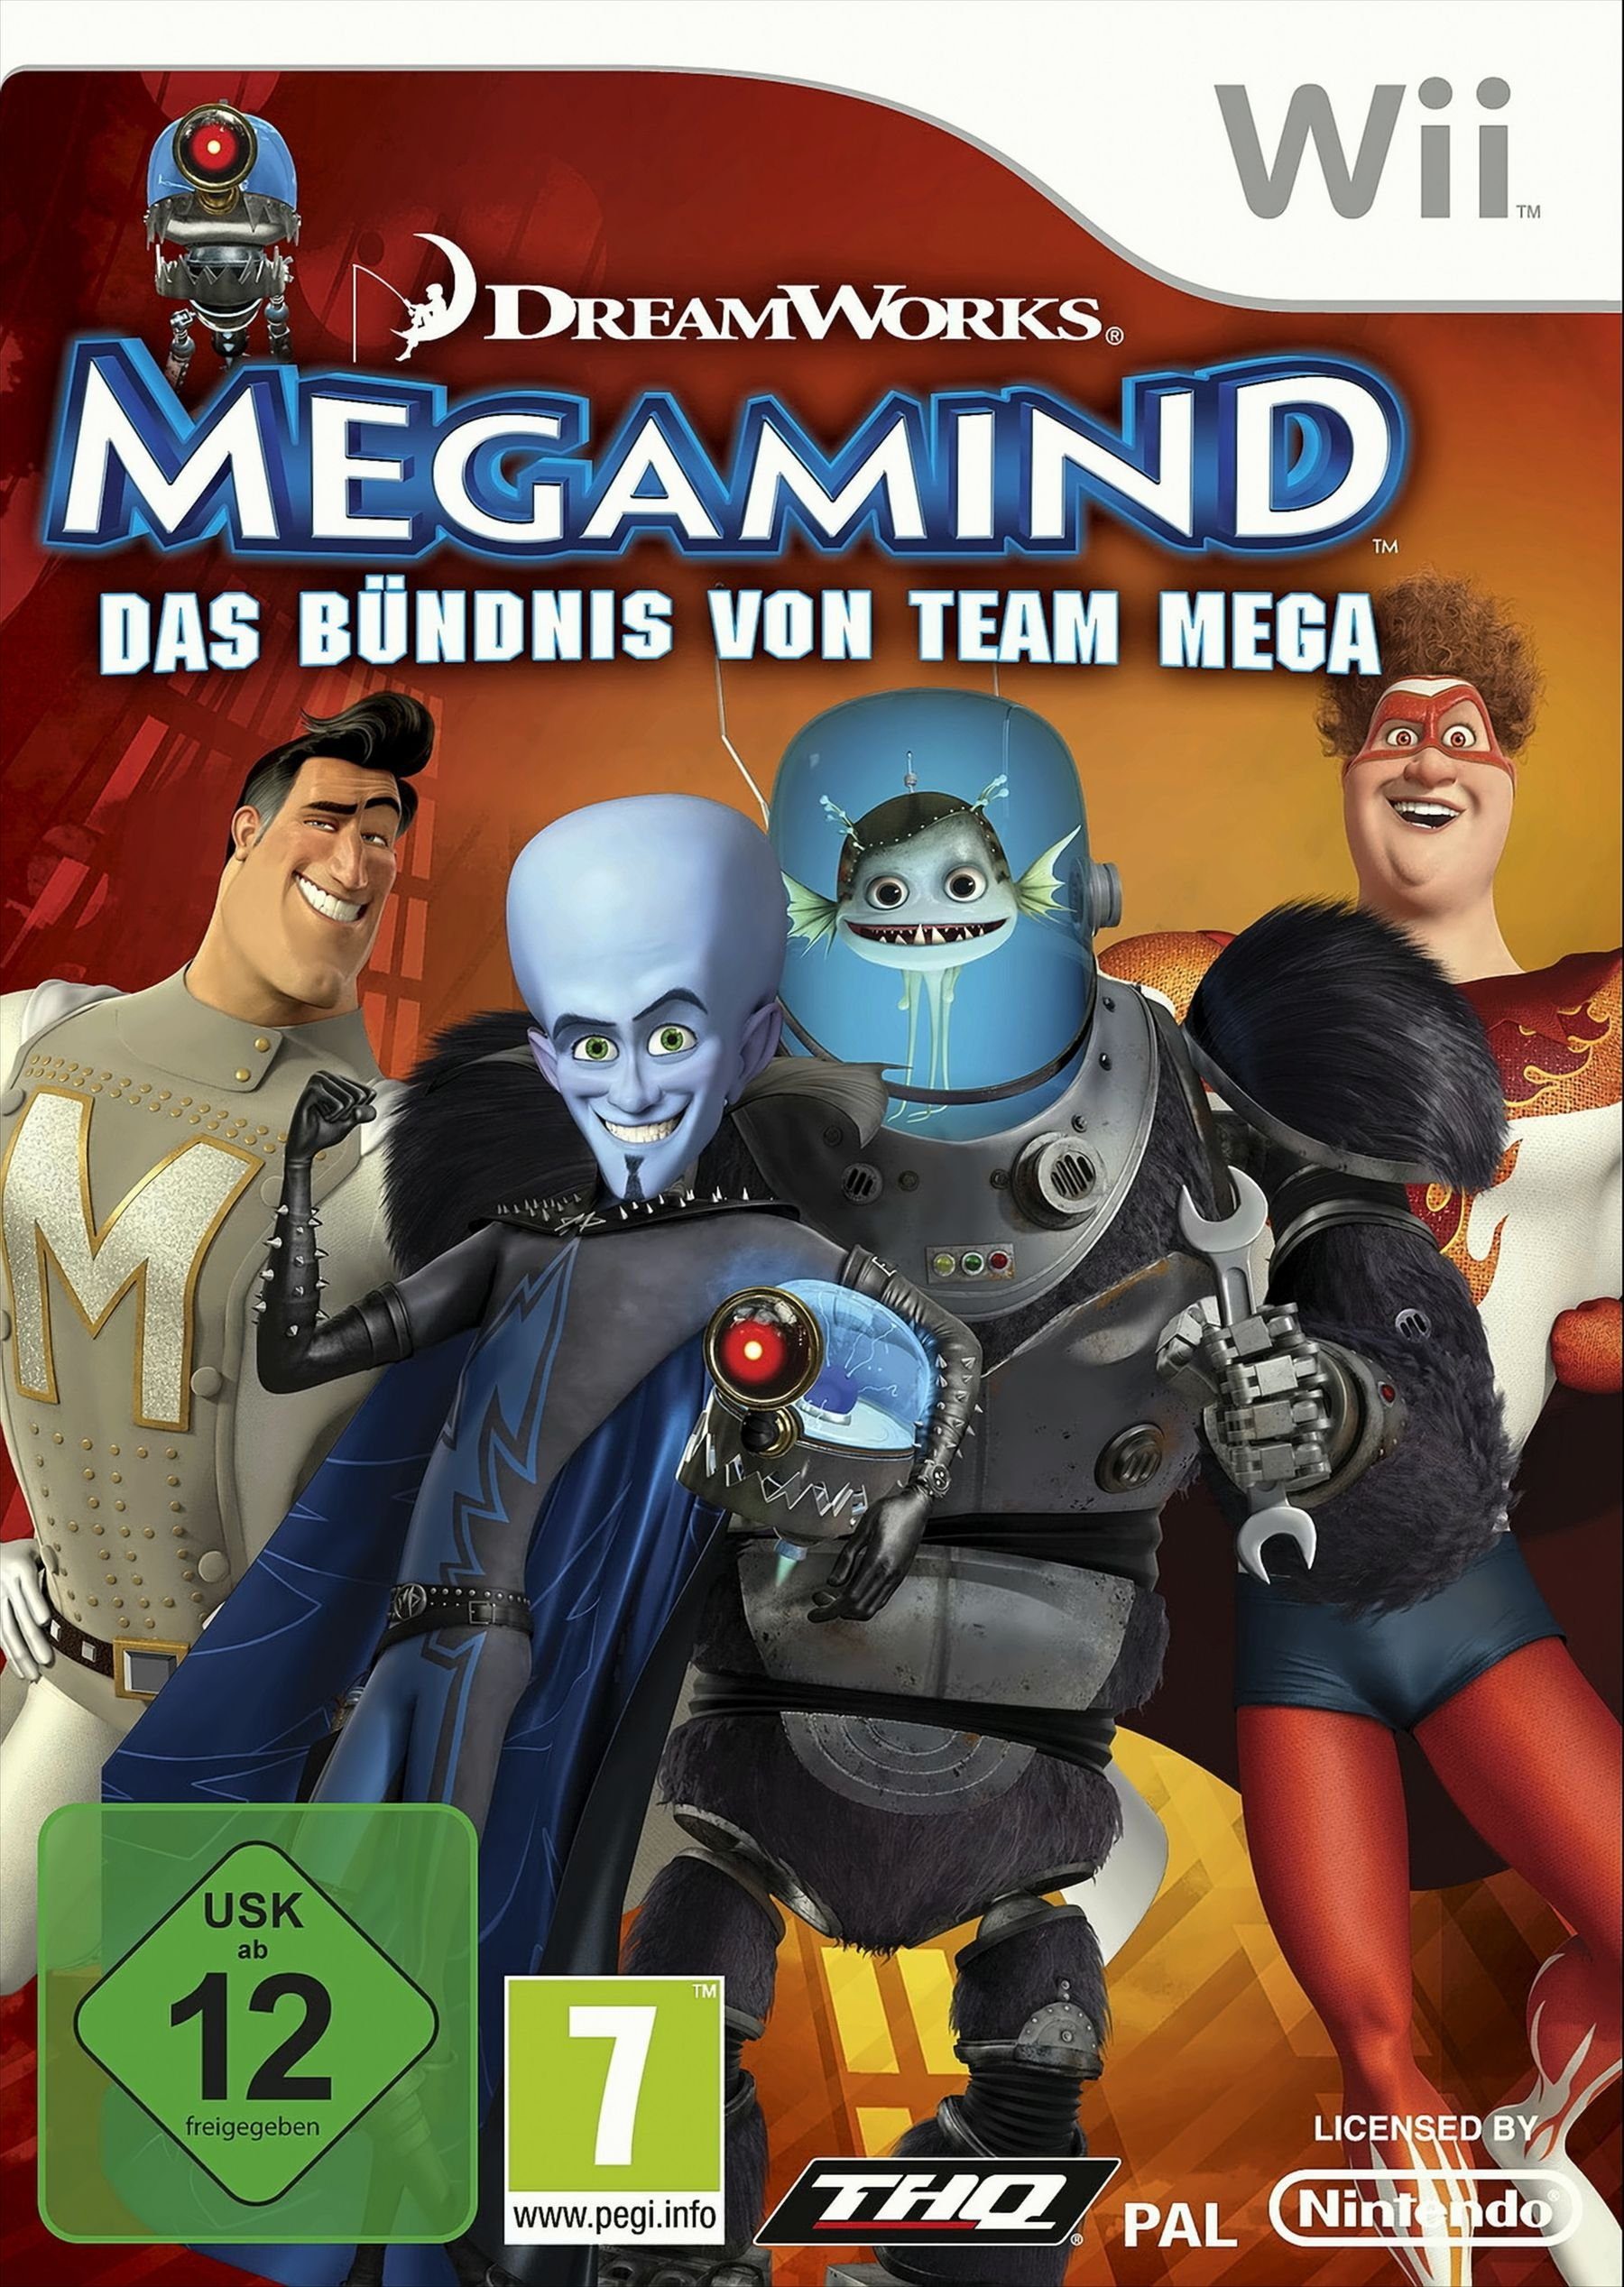 Team Megamind - Das Wii Nintendo von Mega Bündnis